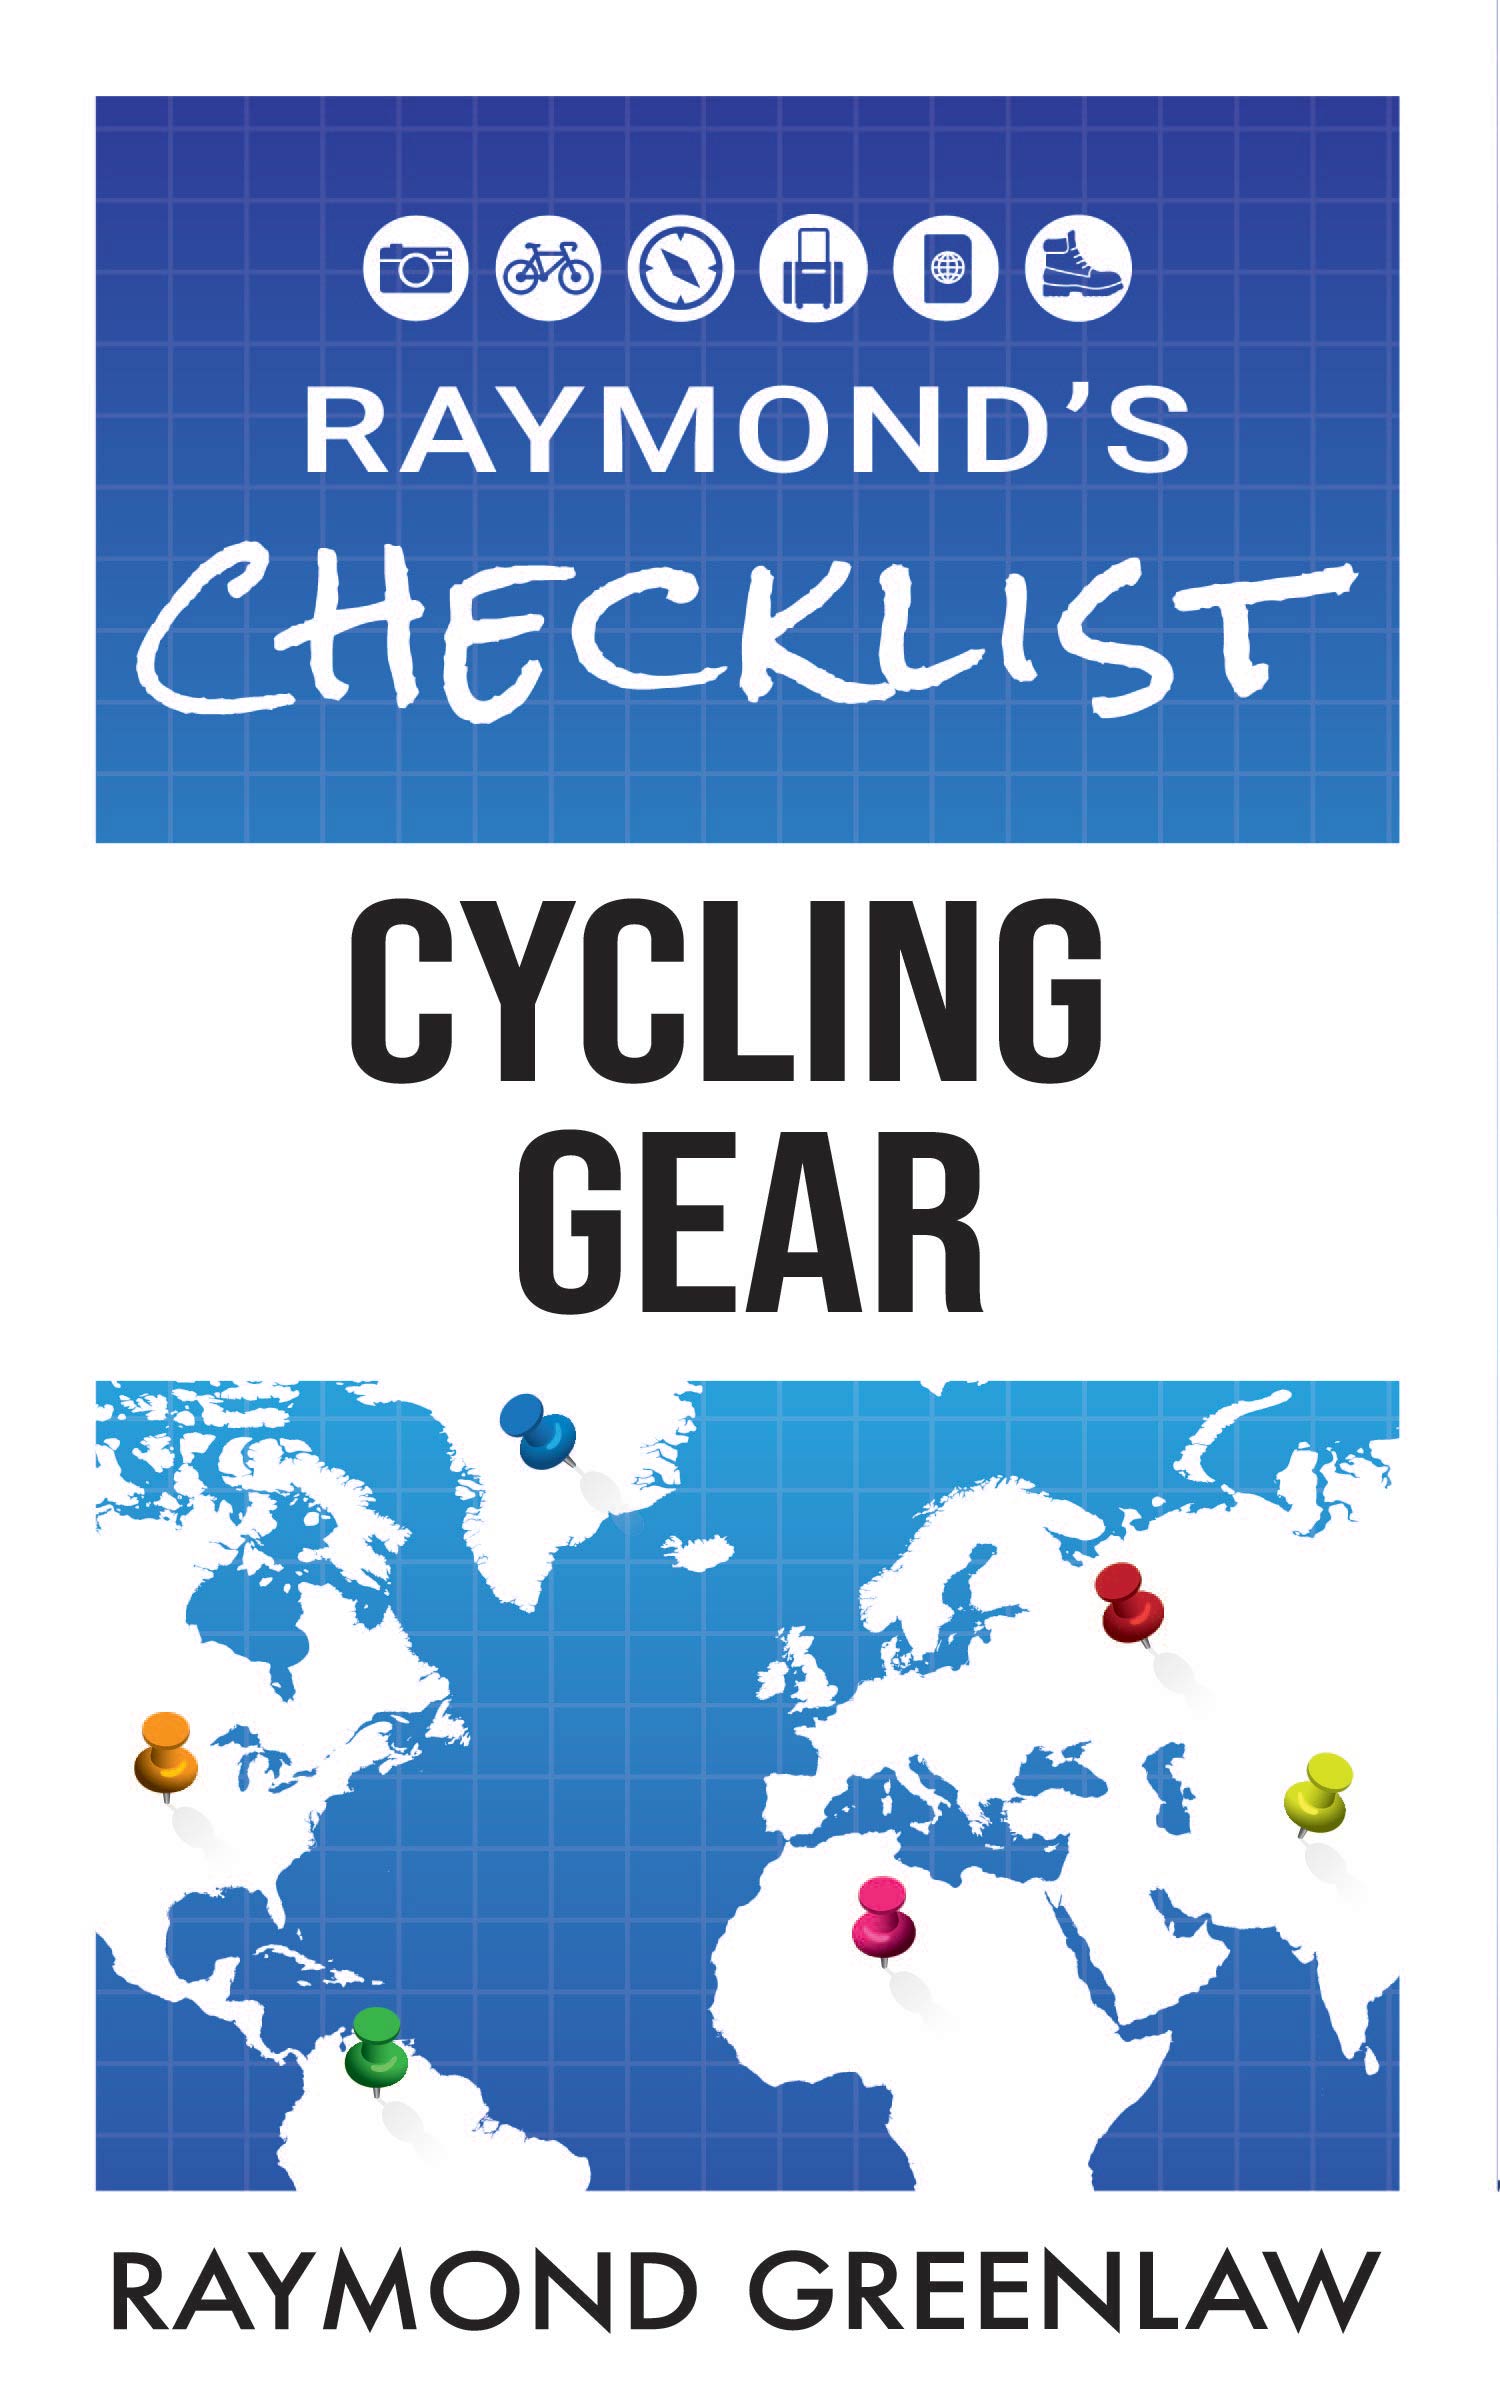 Raymond's Checklist Cycling Gear